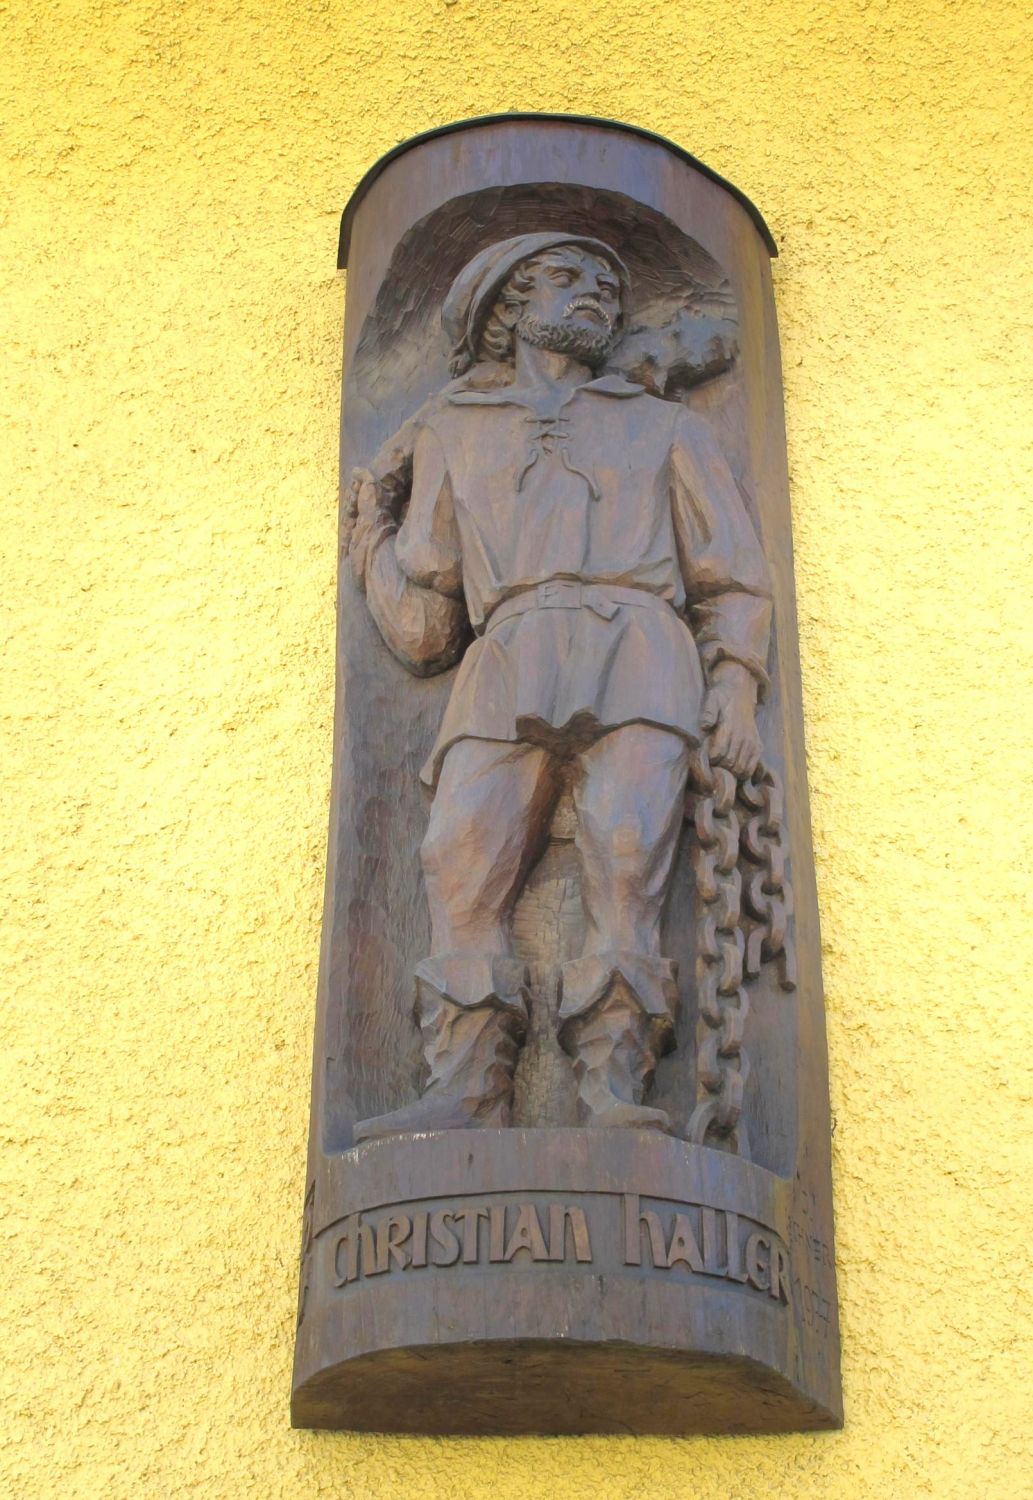 Bauernführer Christian Haller